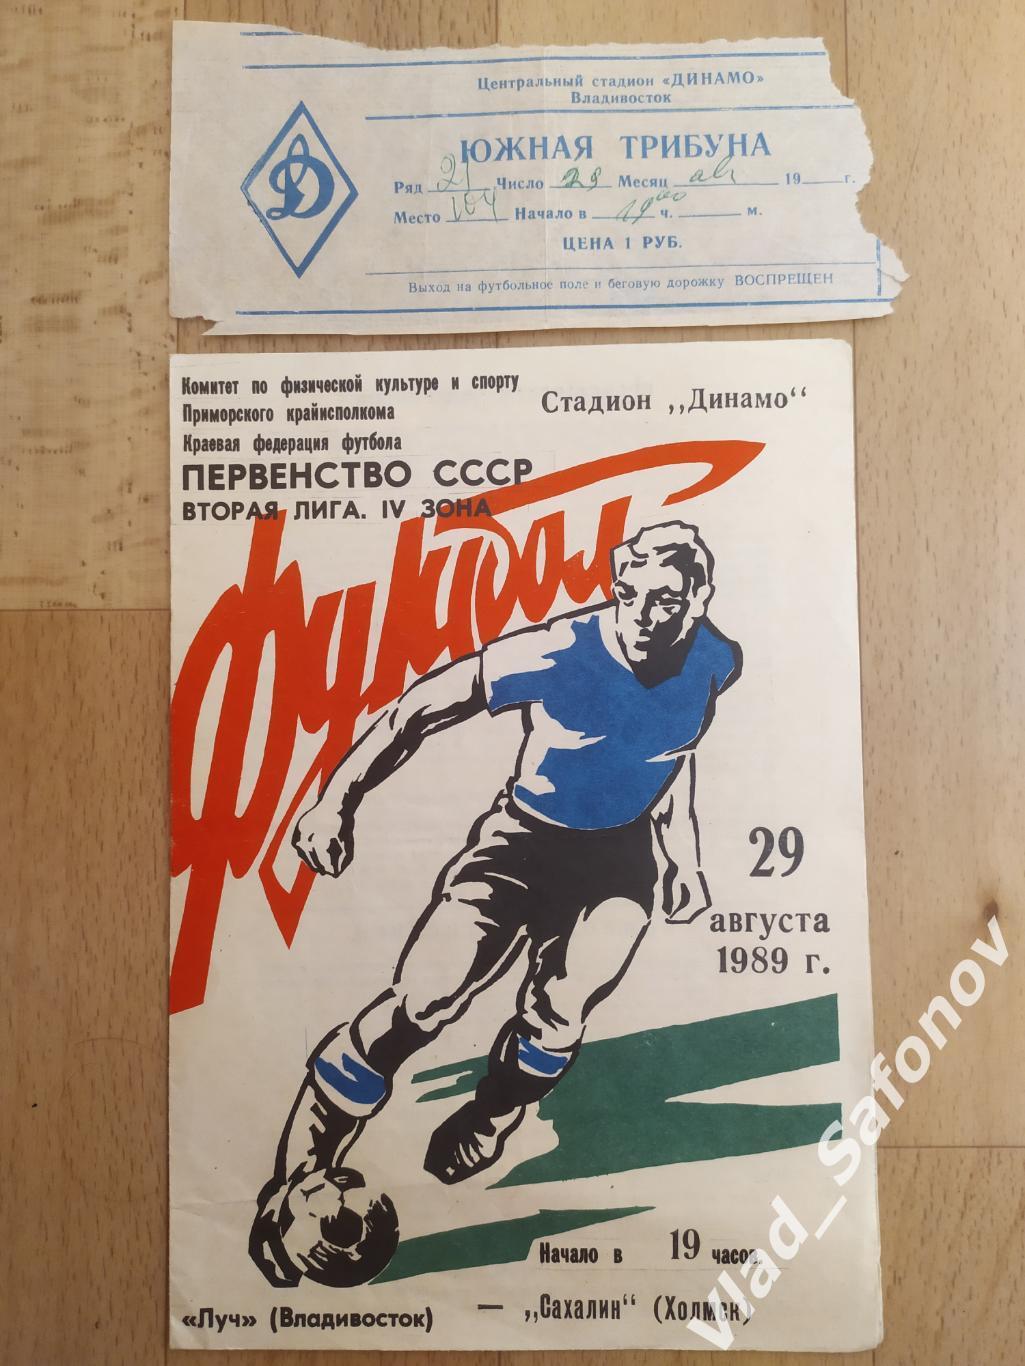 Луч(Владивосток) - Сахалин(Холмск) + билет. 2 лига. 29/08/1989